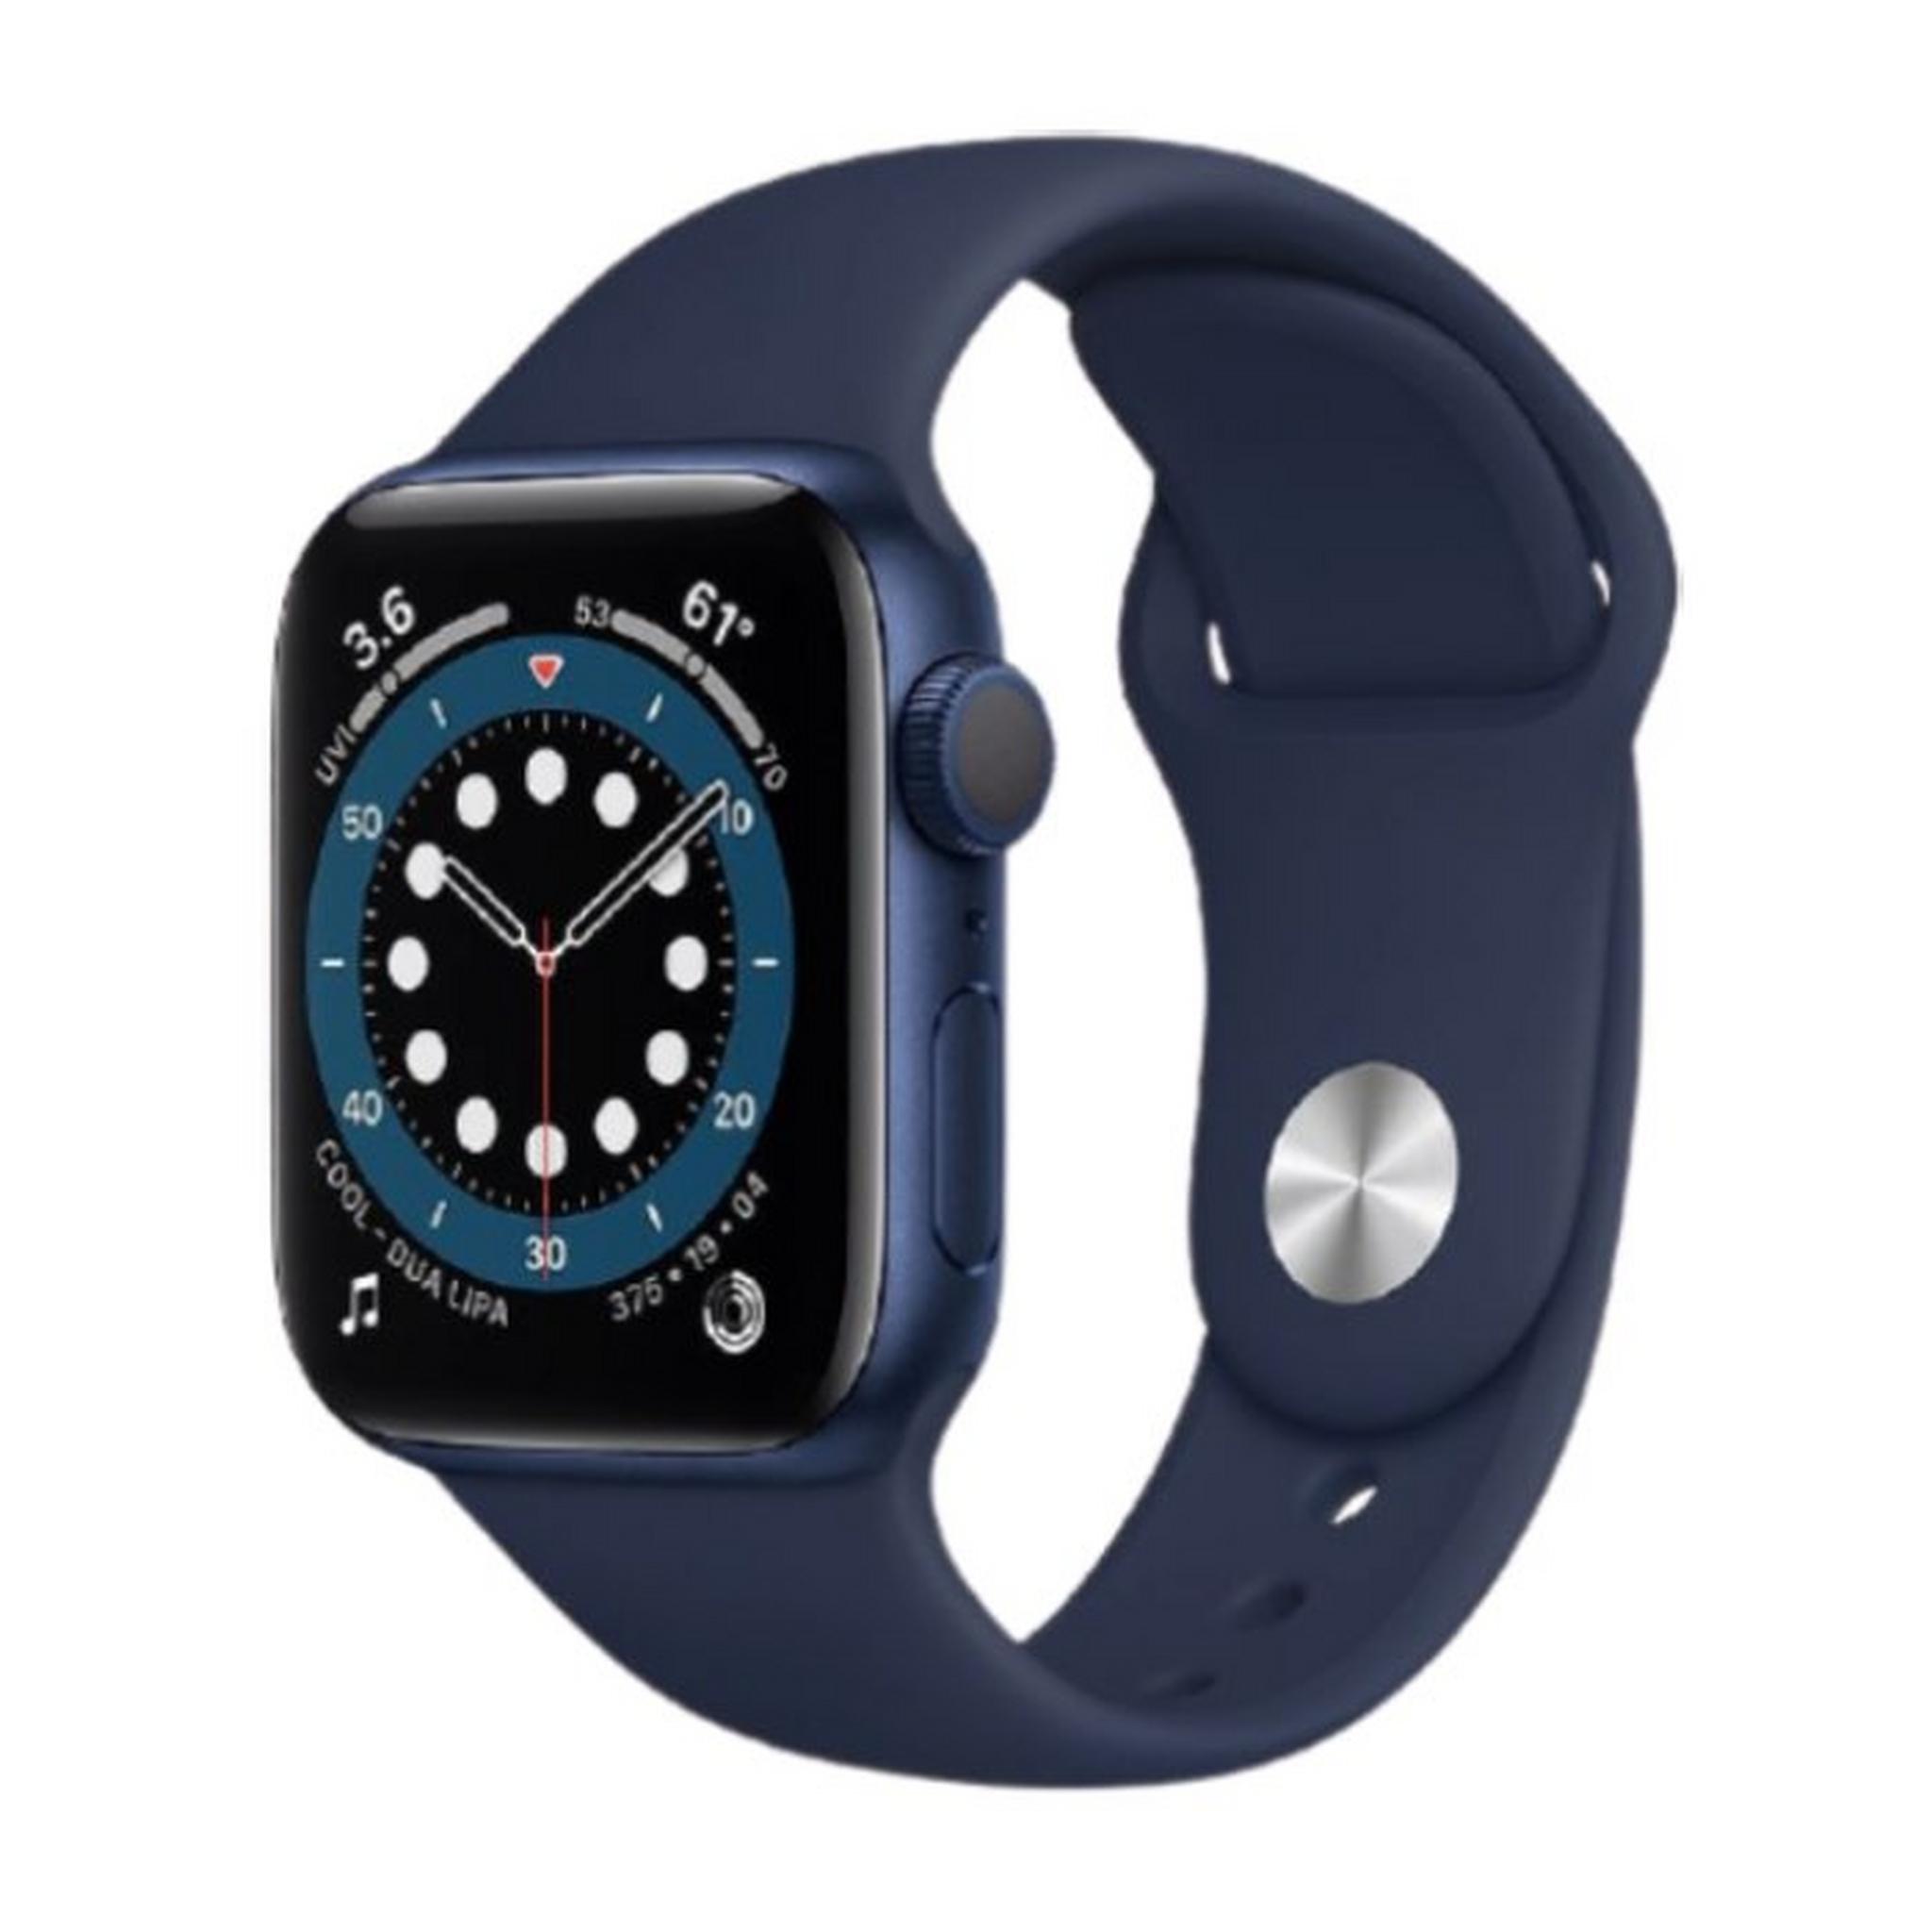 Apple Watch Series 6 Cellular 40mm Aluminum Case Smart Watch - Blue / Navy